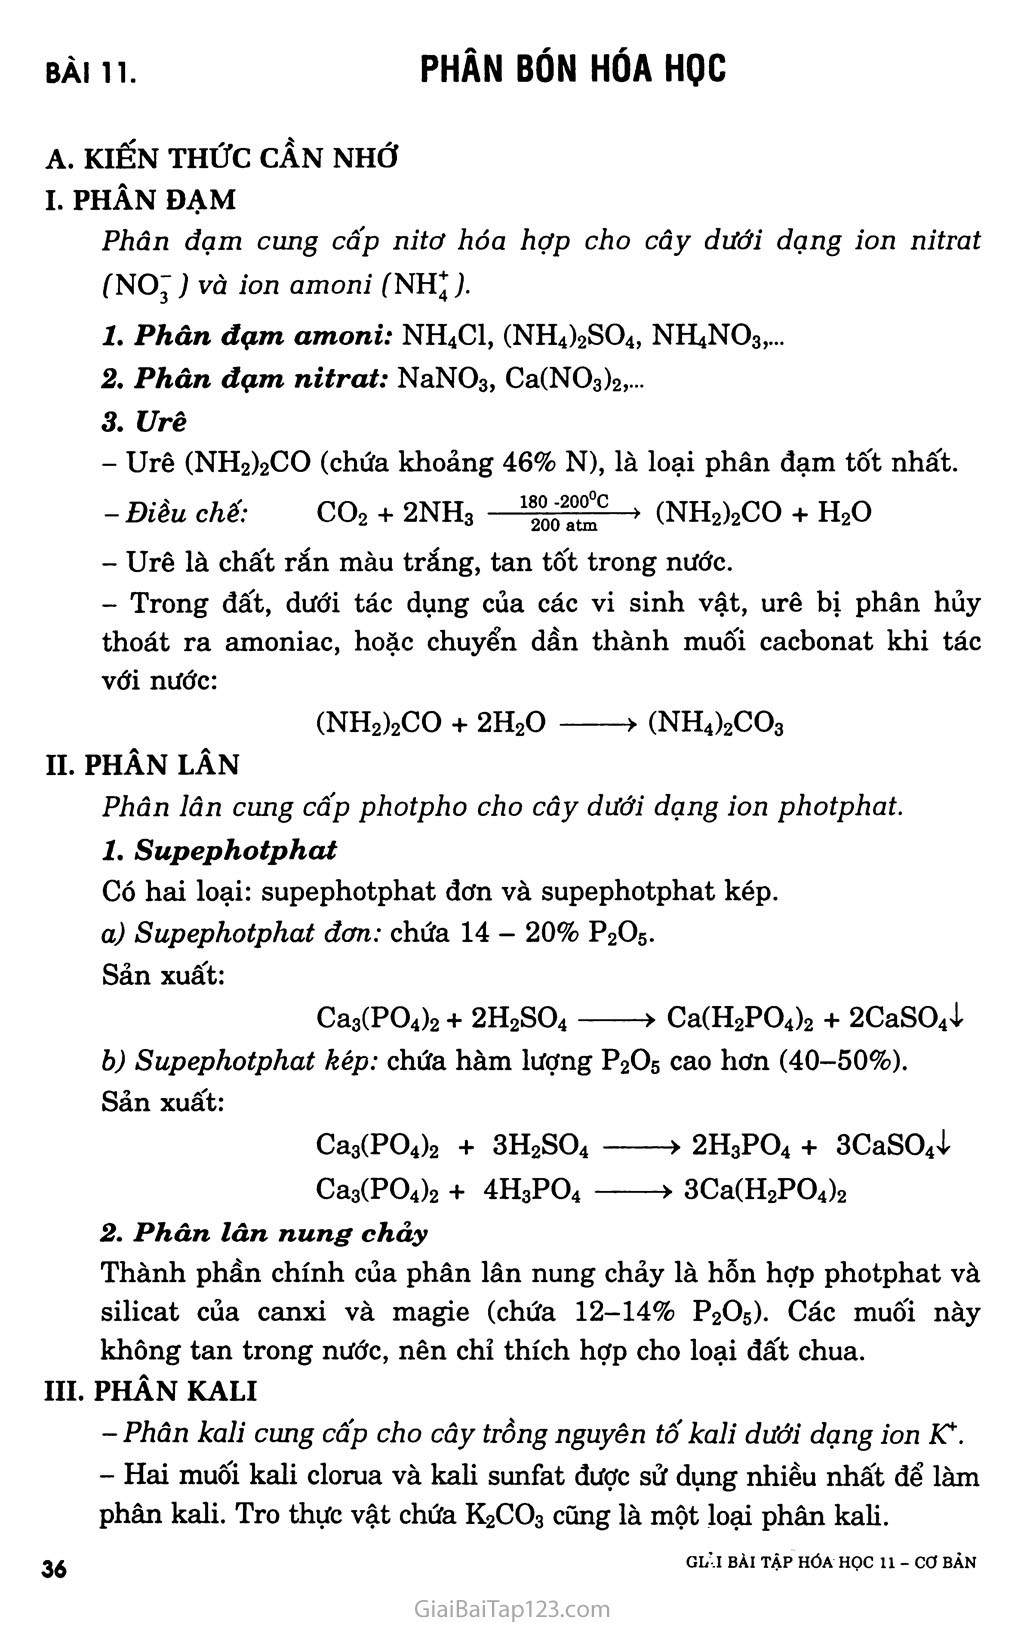 Bài 11: Phân bón hóa học trang 1